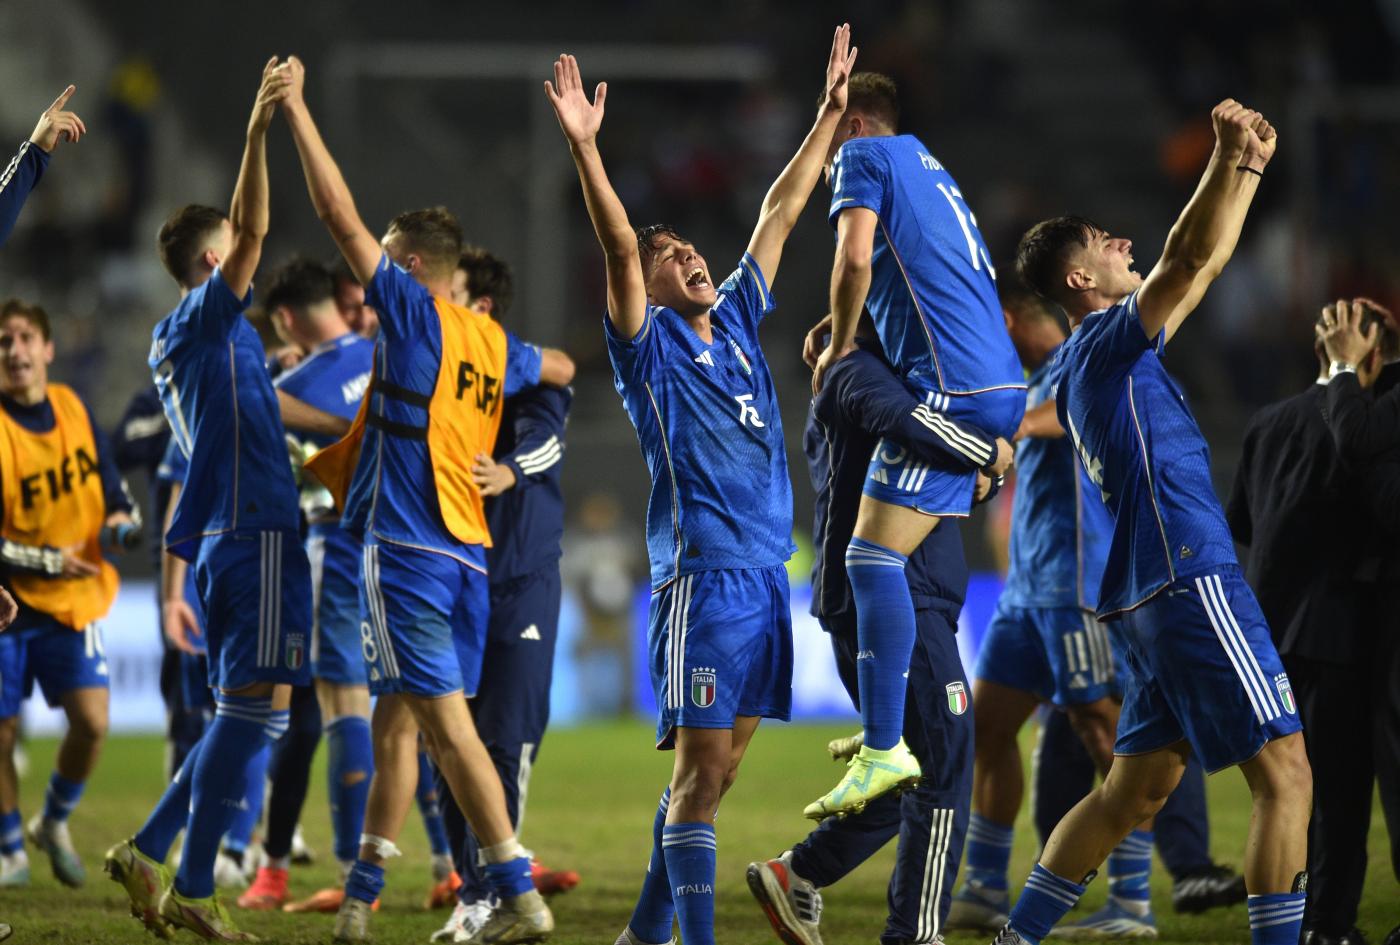 L'Italia Under 20 festeggia la vittoria sulla Corea al Mondiale Under 20